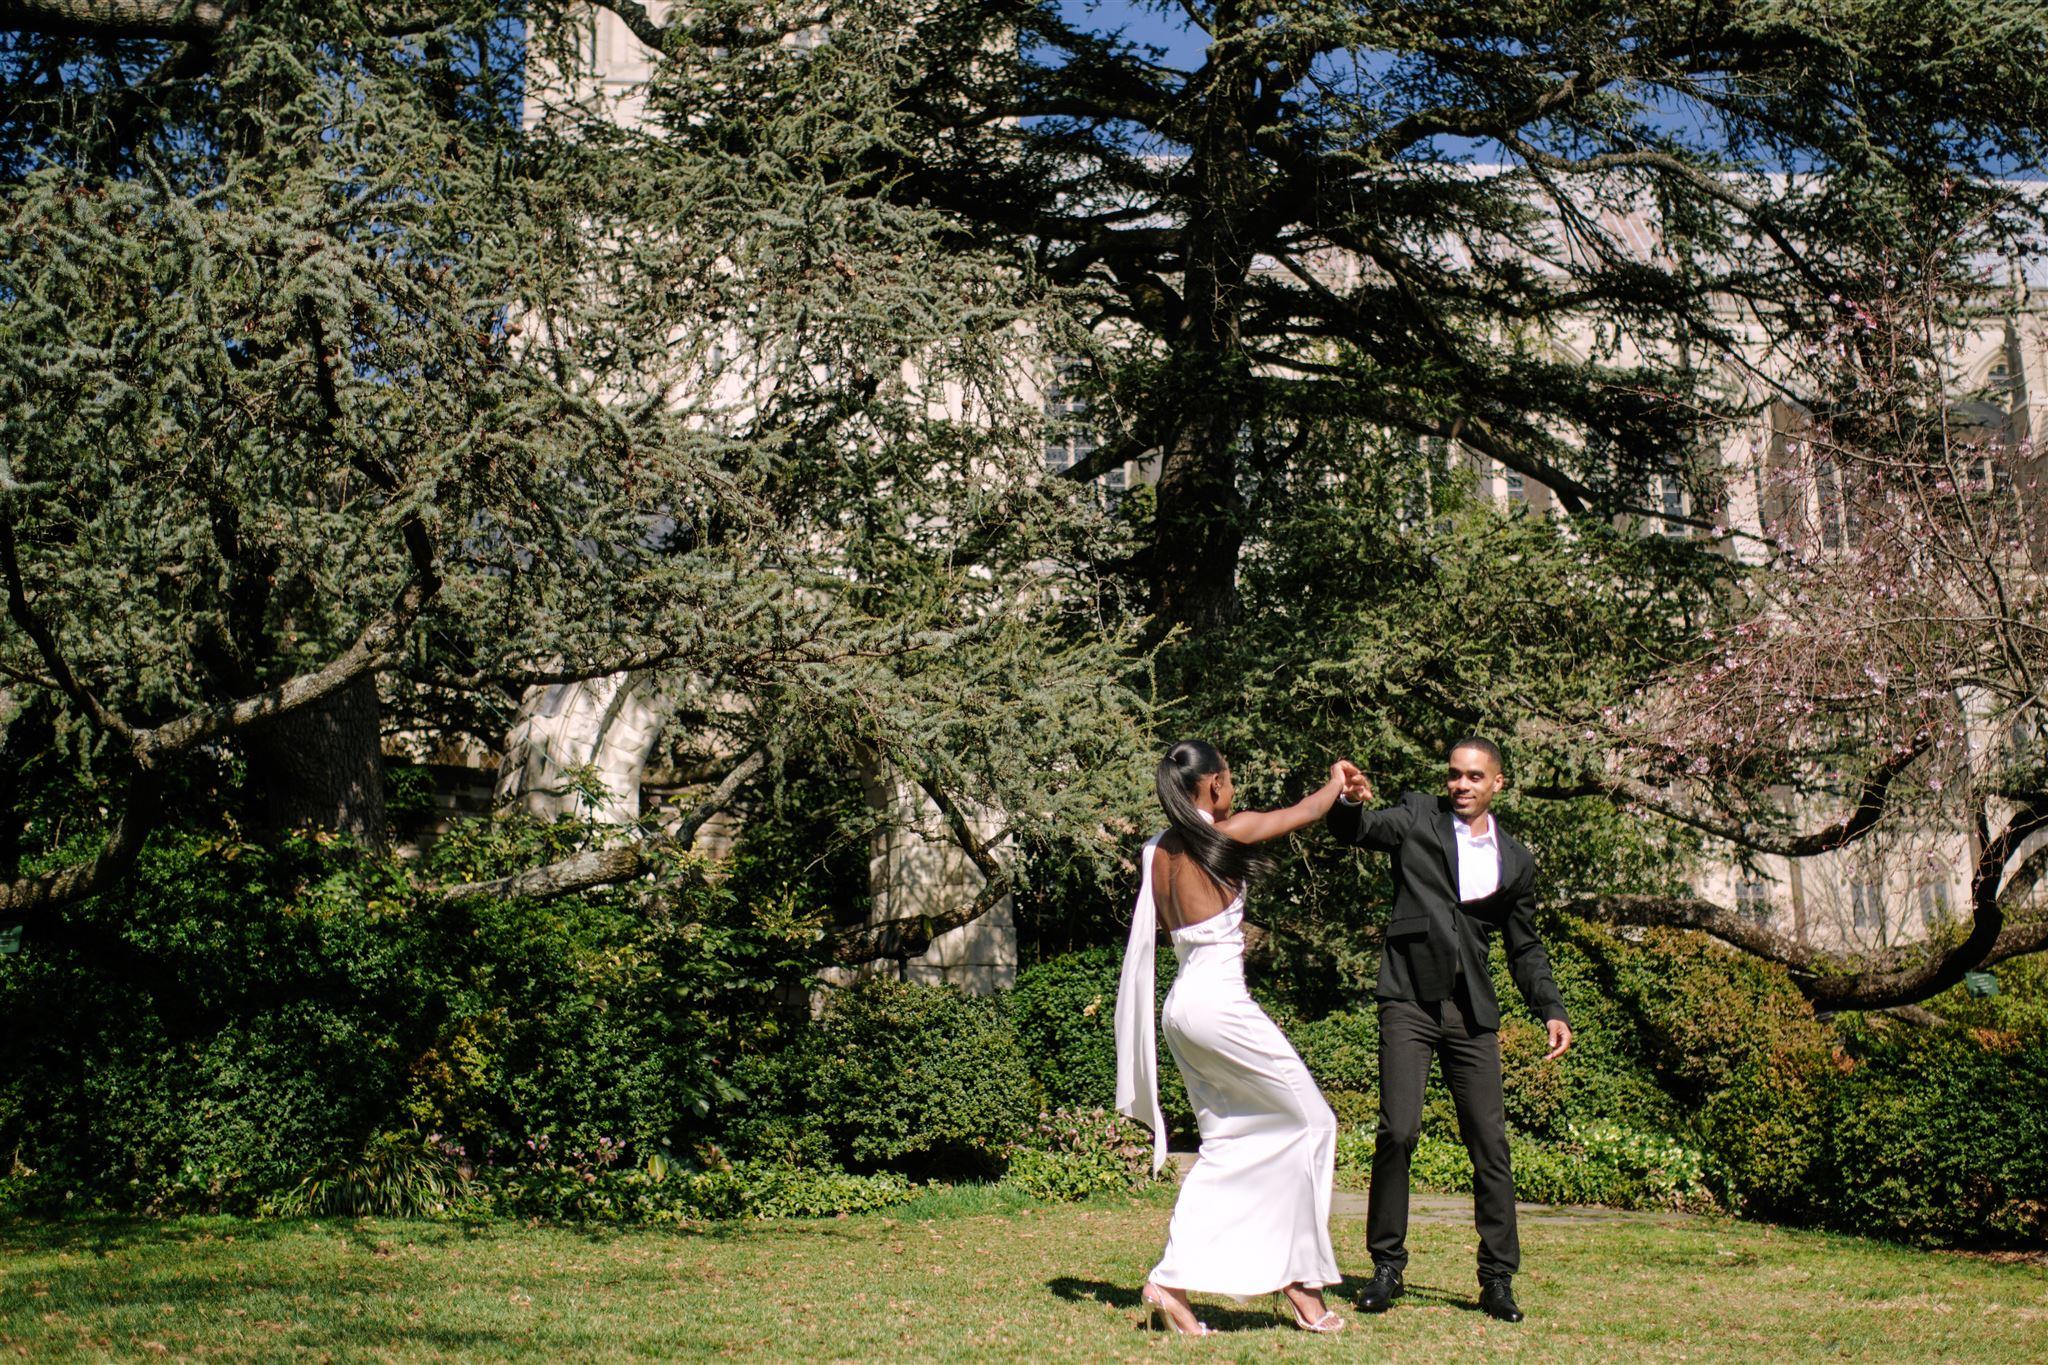 The Wedding Website of Shantell Tyler and Trenton Ingram